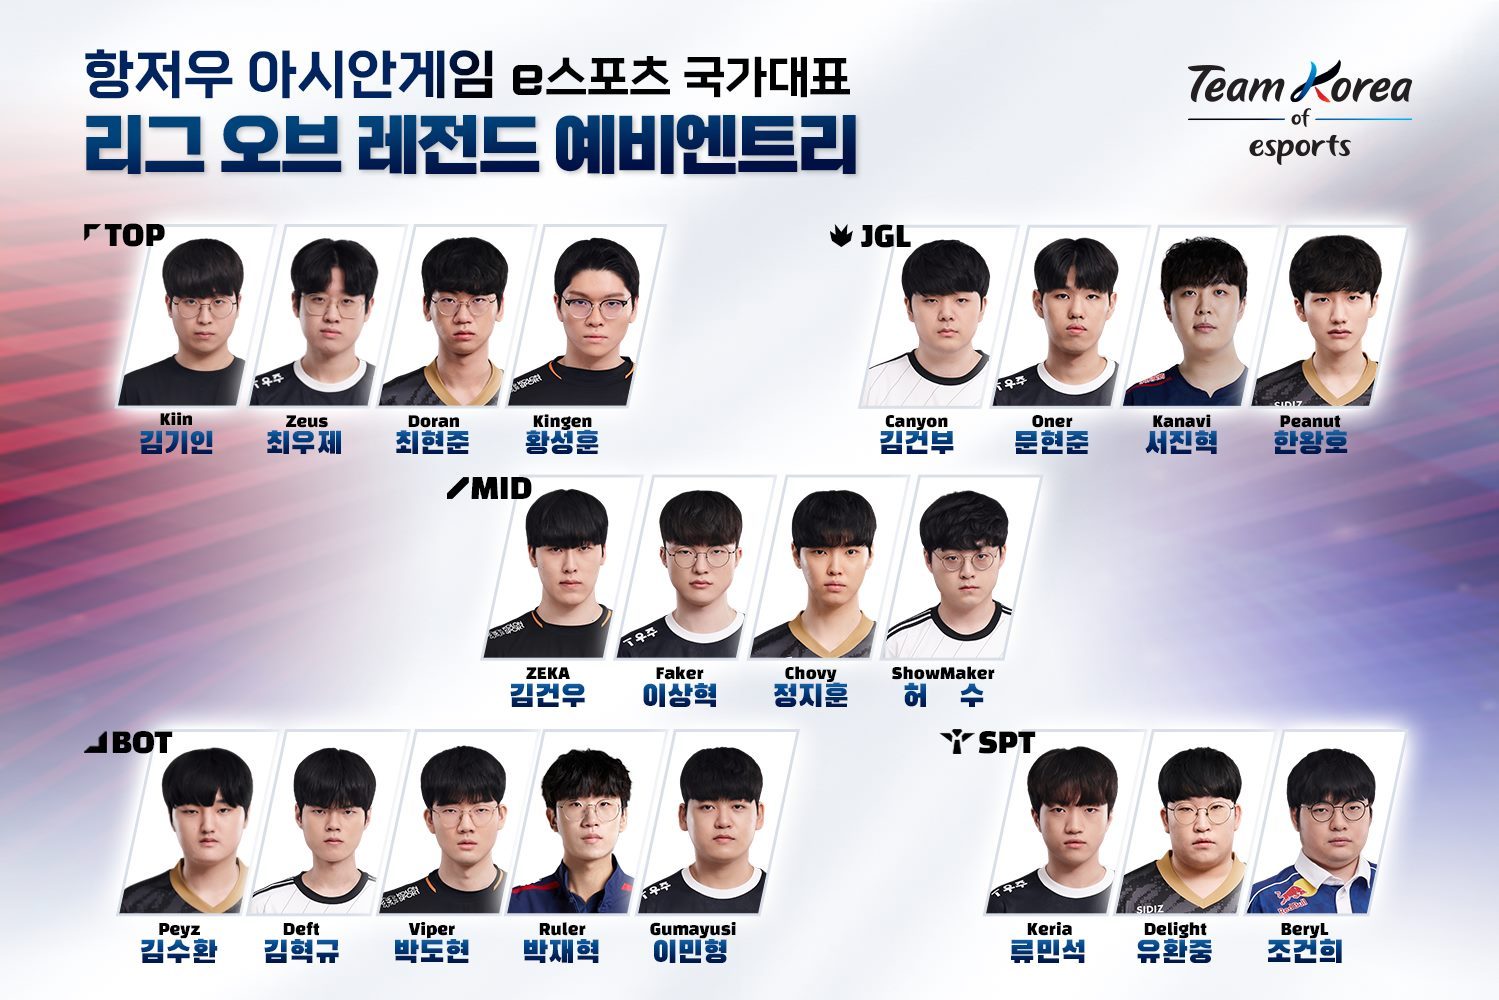 韩国电竞协会公布亚运备选名单:Ruler、Kanavi、Viper在列